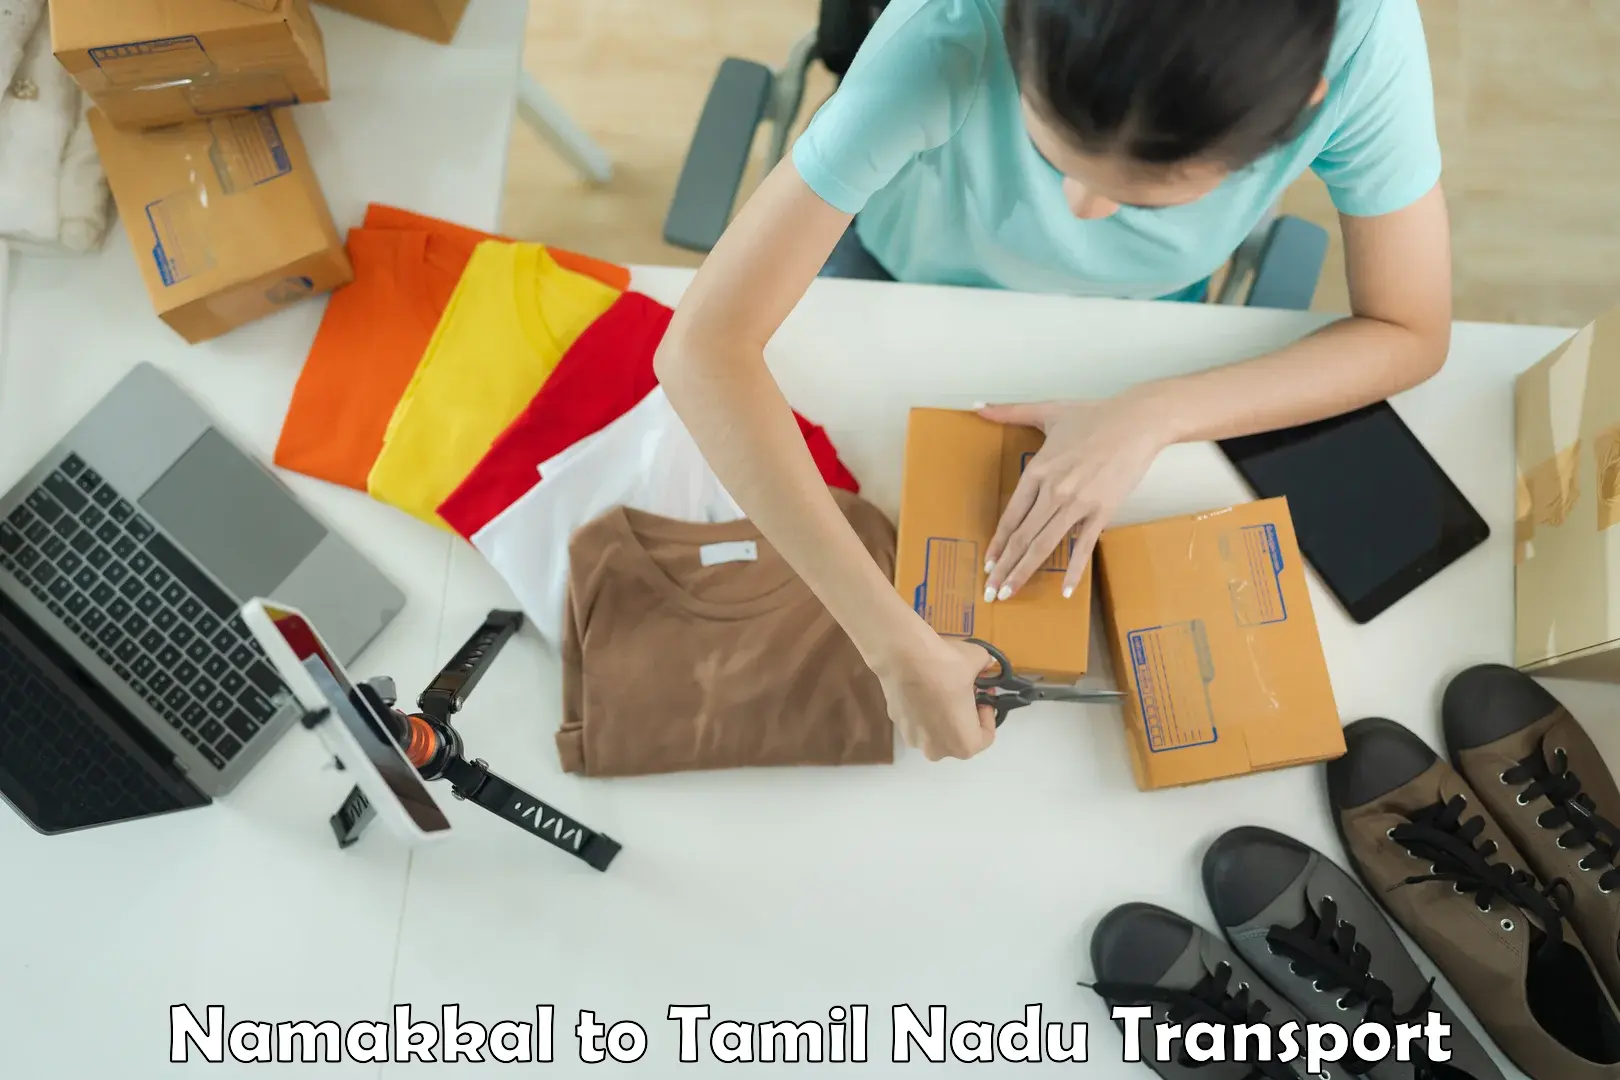 Material transport services Namakkal to Surandai